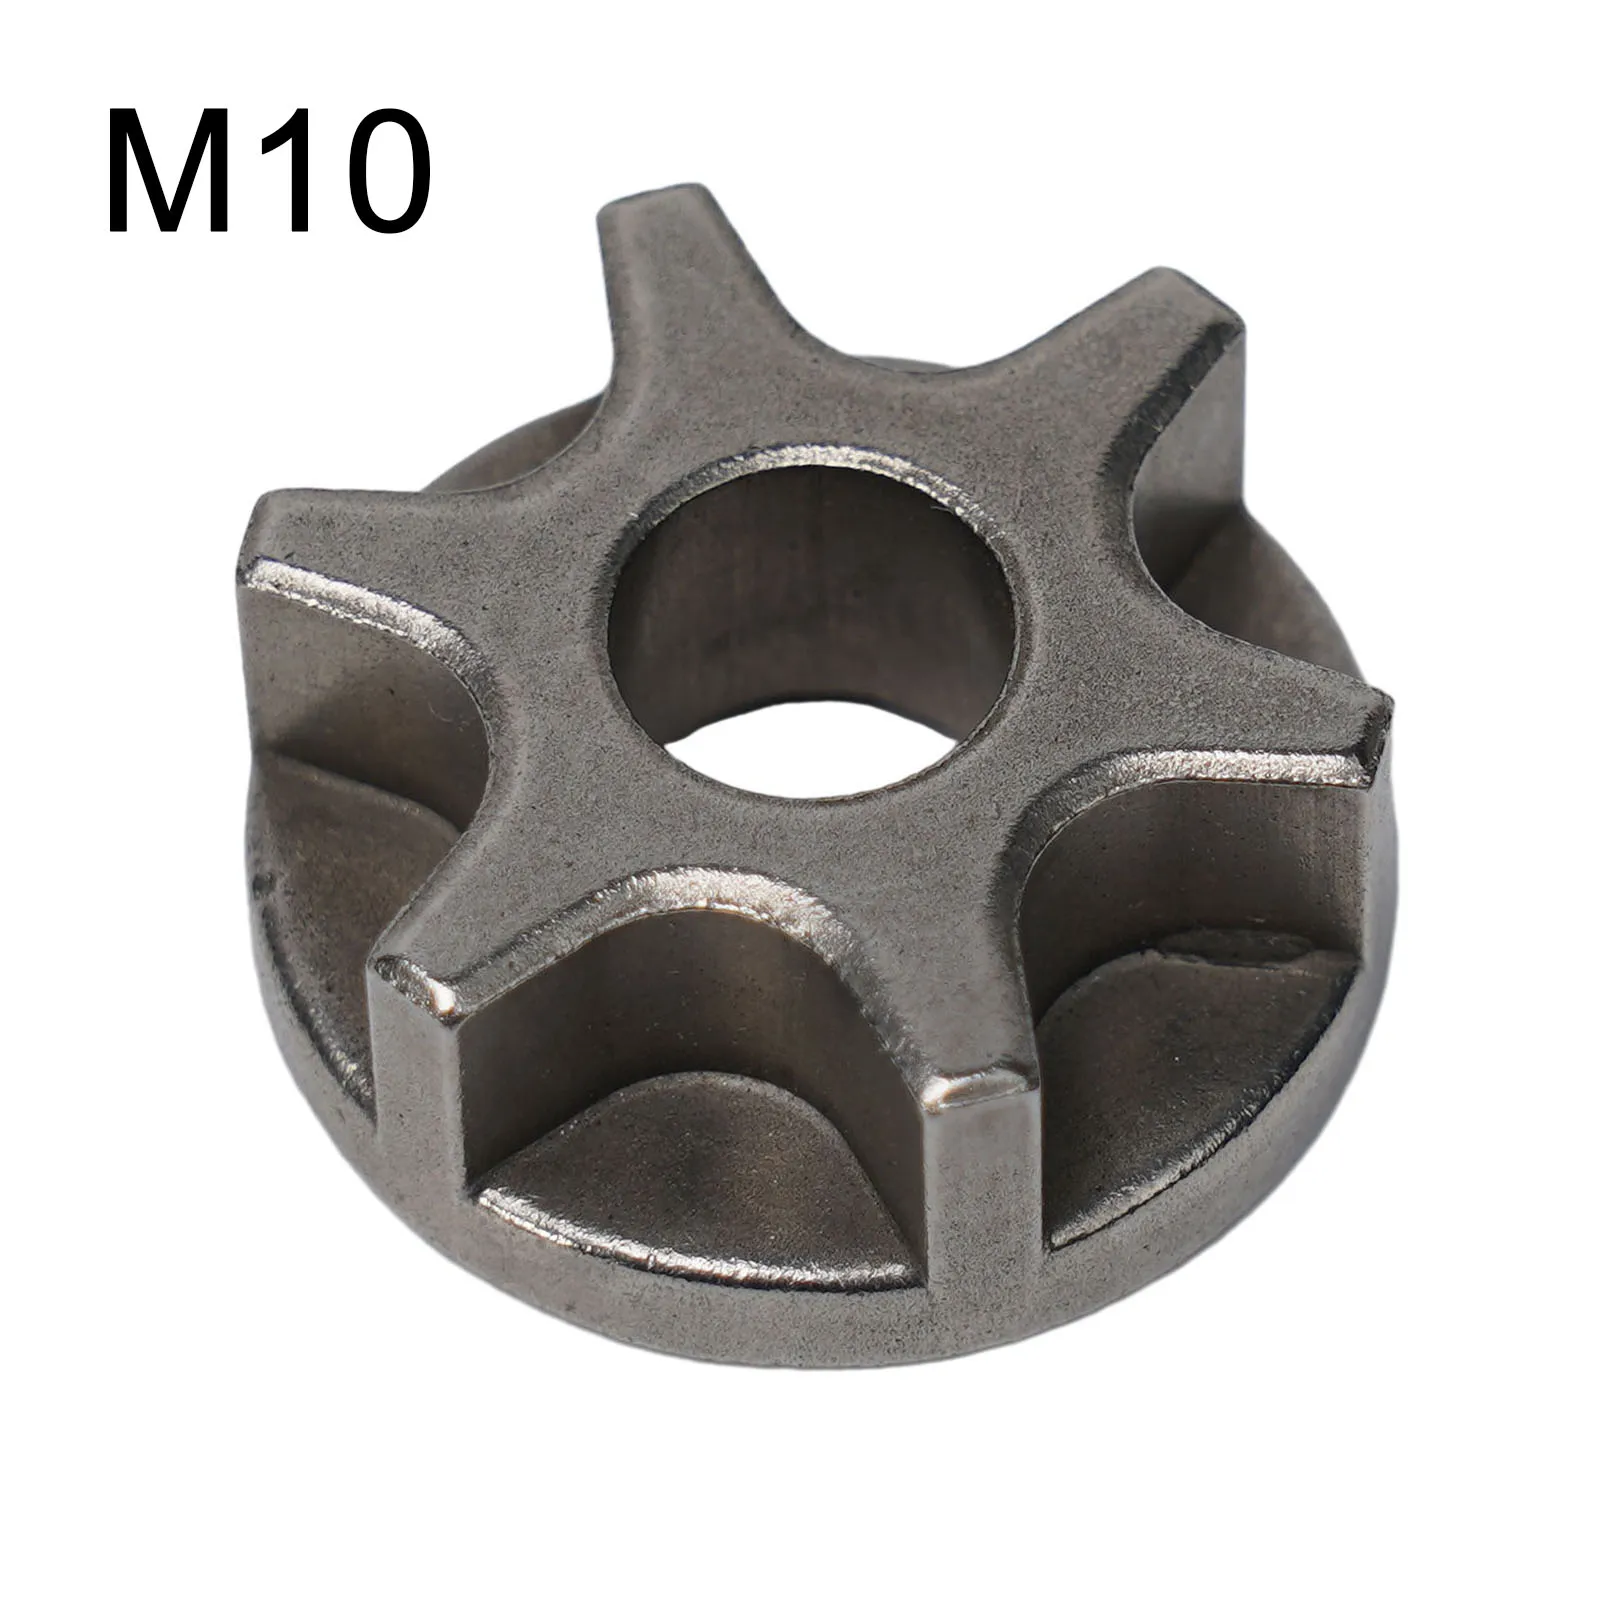 

Звездочка цепной пилы M10 M14 M16, 1 шт., шестерня цепной пилы для 100, 115, 125, 150, 180, деталь кронштейна цепной пилы